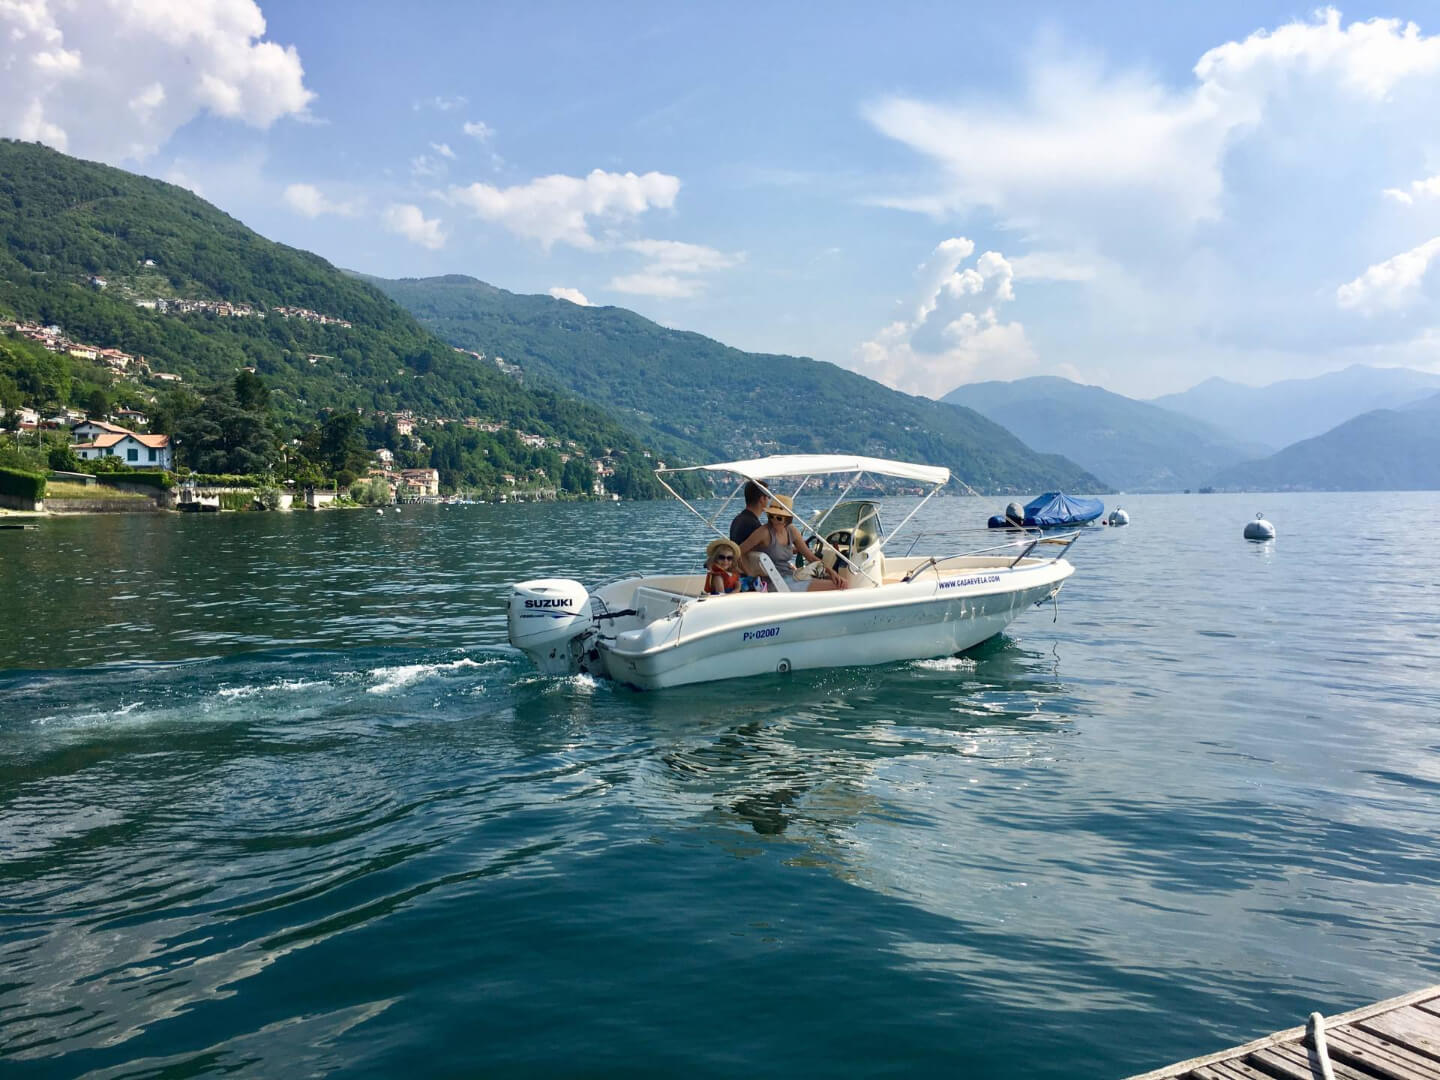 Noleggio barche - Esplora il Lago Maggiore da solo